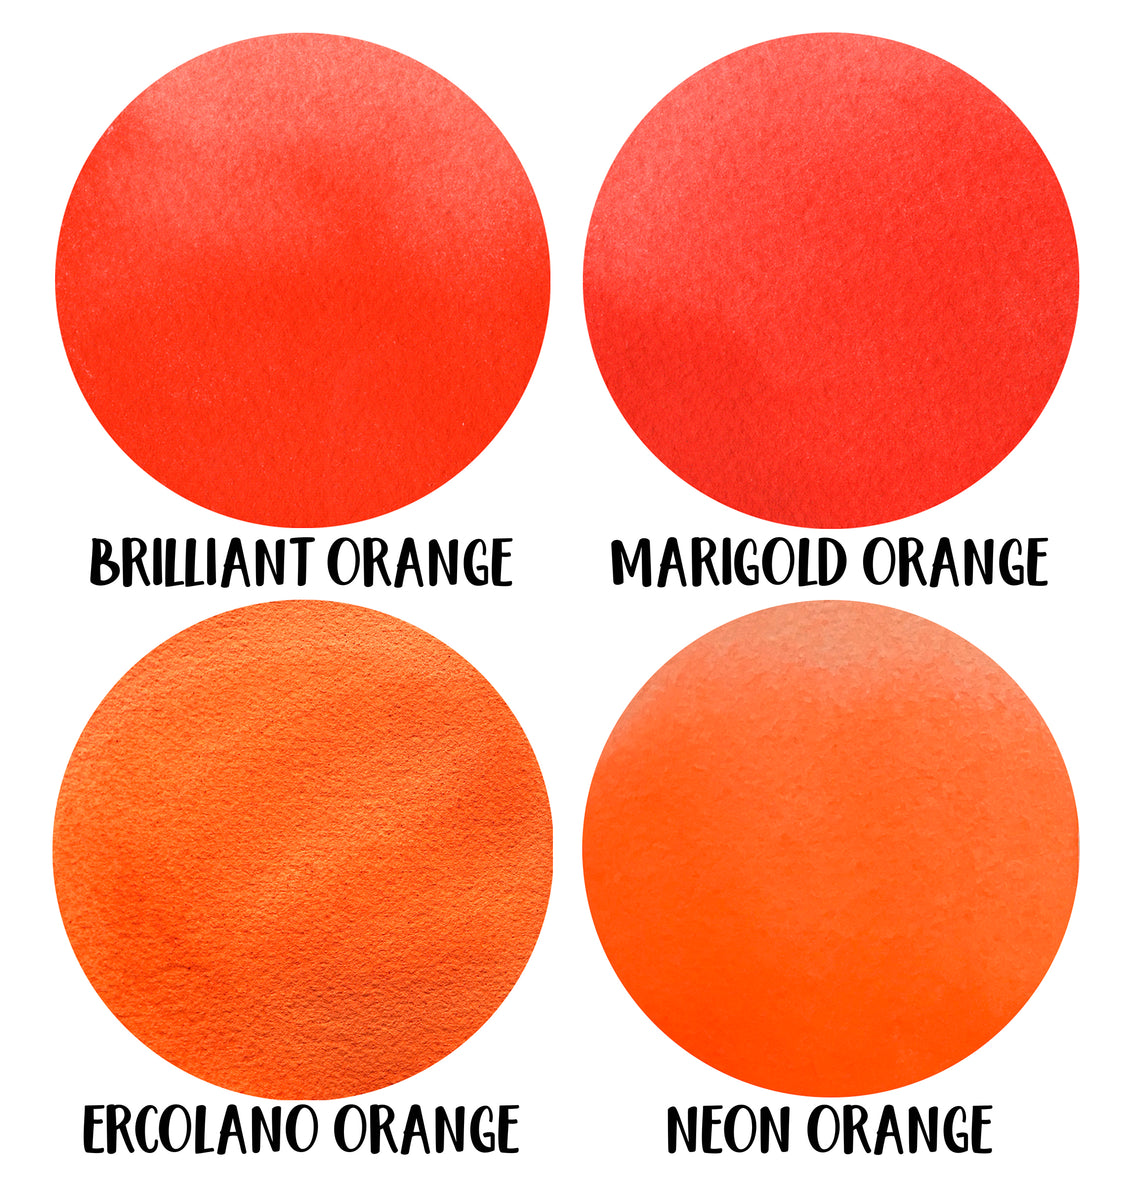 Bio orange e panno brillo #amazing #bestoftheday #colorful #follow #fo